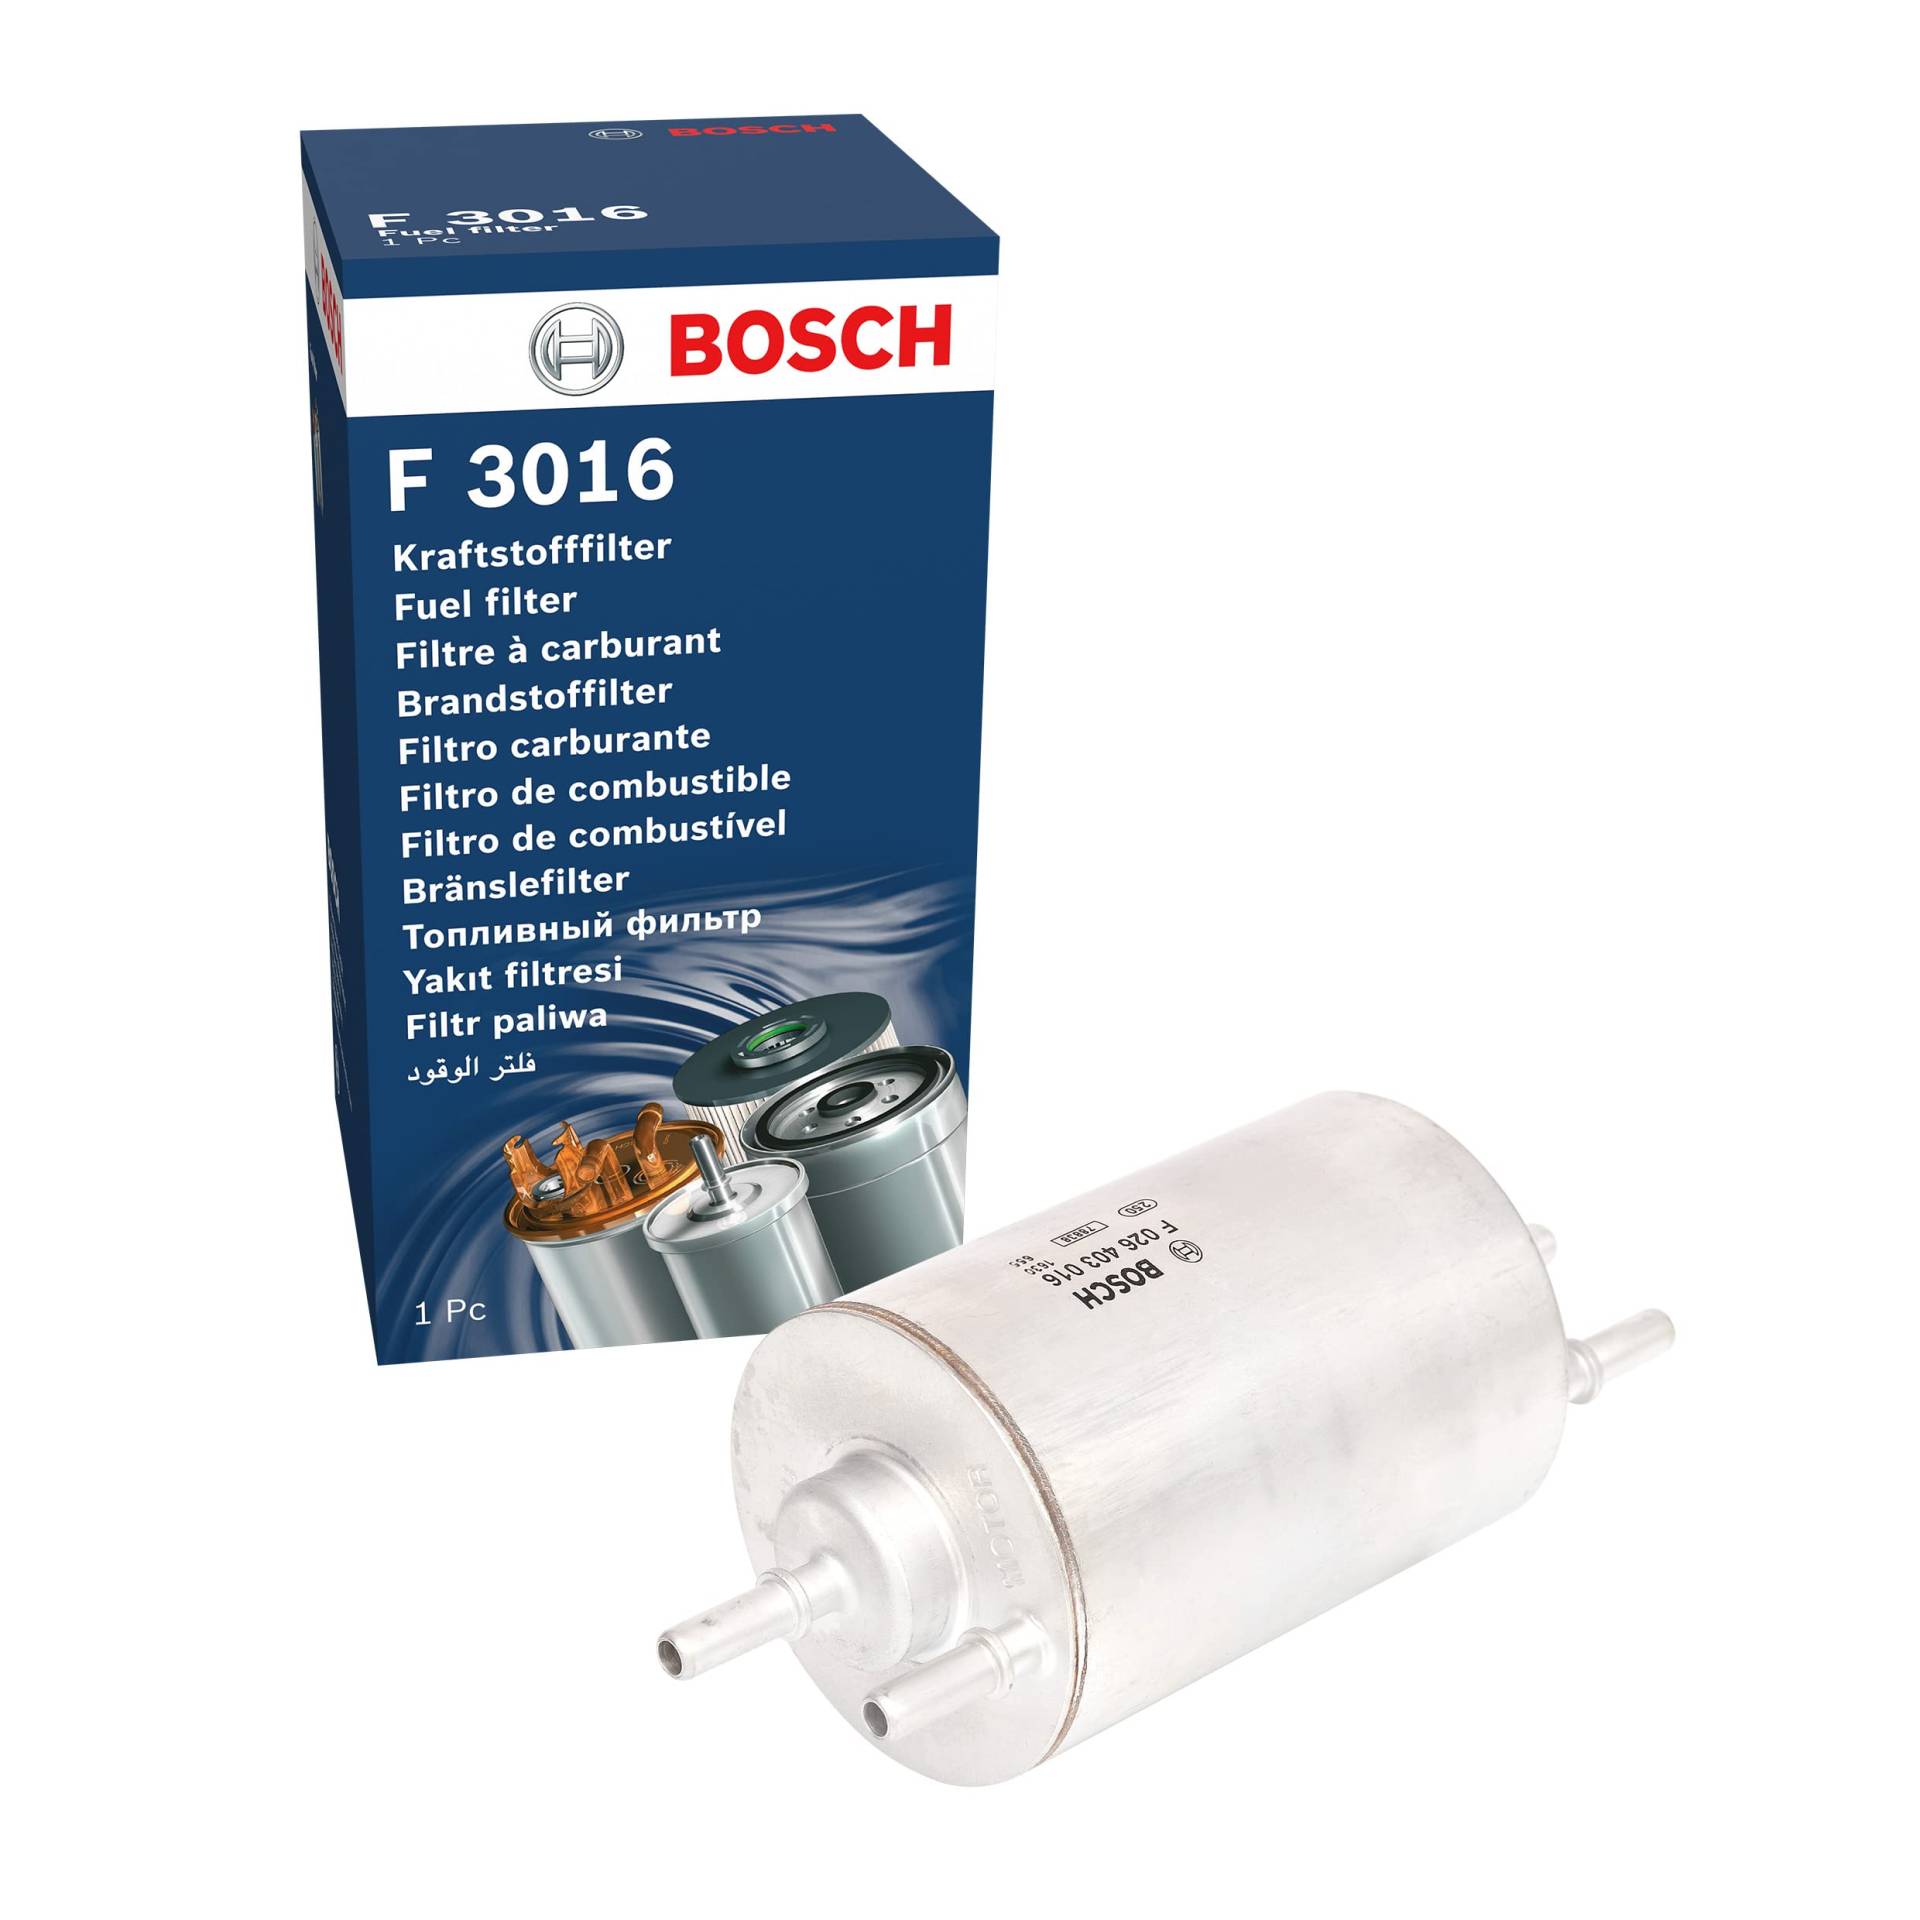 Bosch F3016 - Benzinfilter Auto von Bosch Automotive